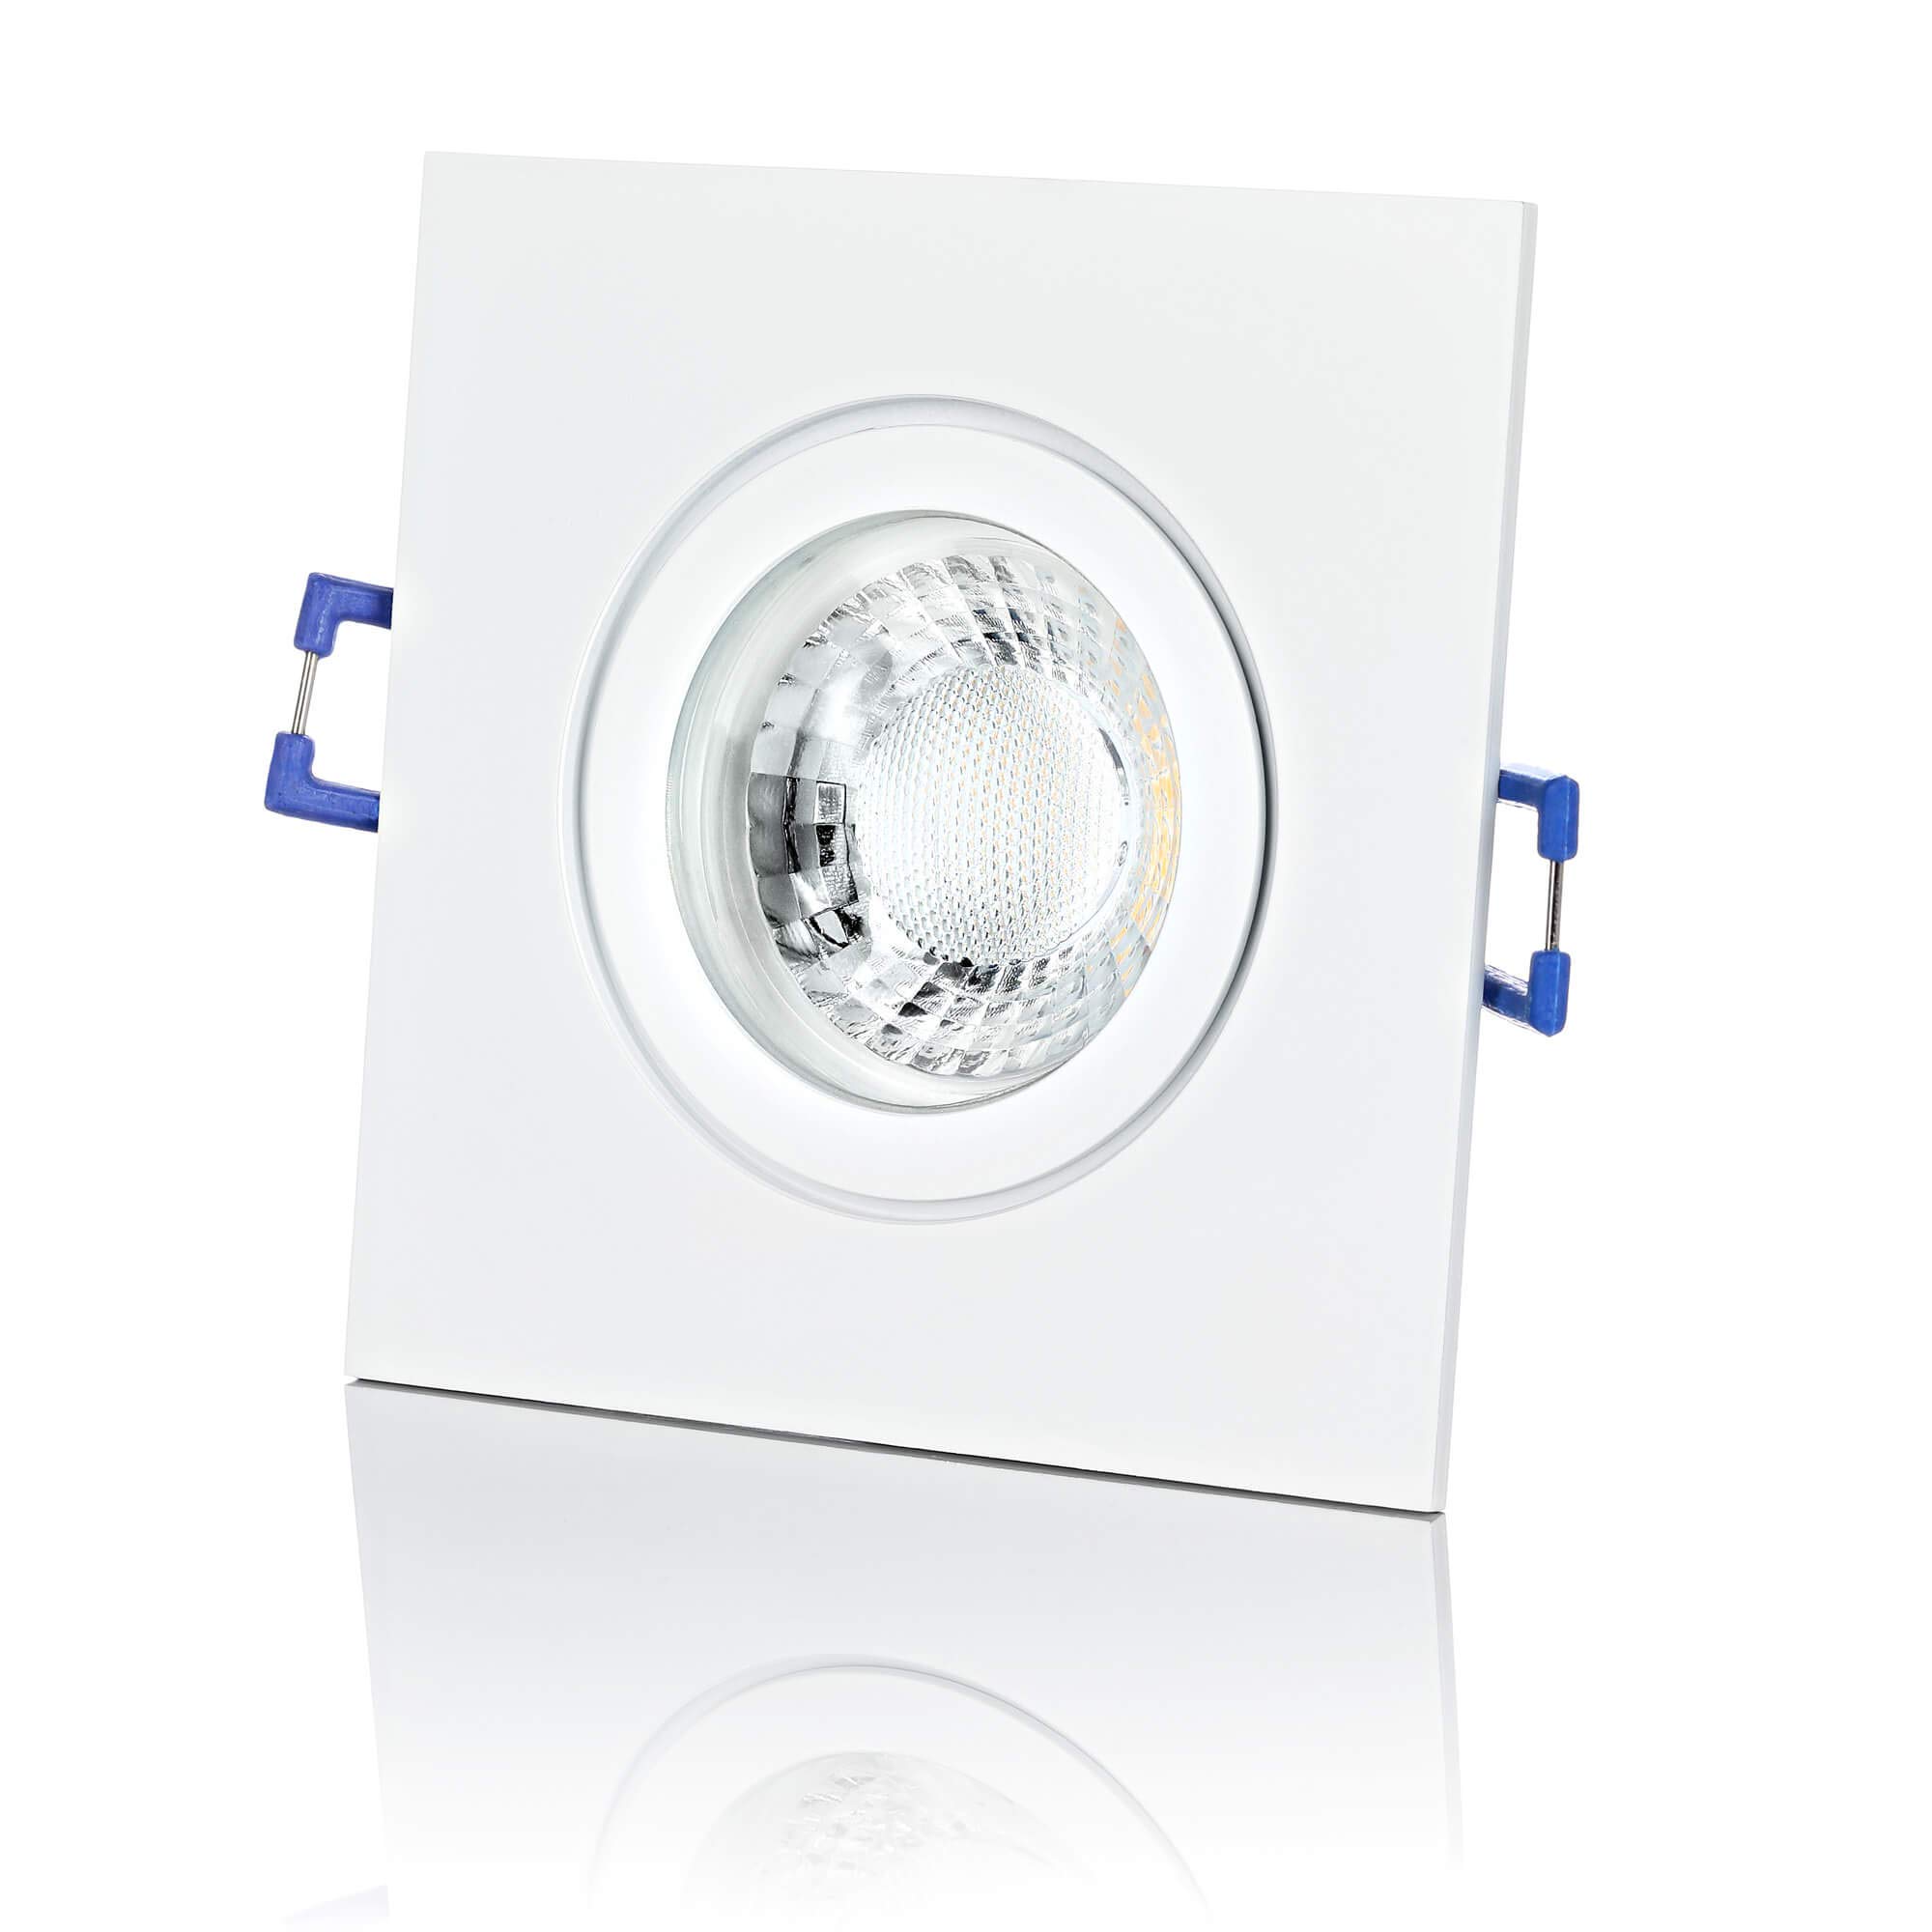 lambado® Premium LED Spot IP44 Flach Weiß - Hell & Sparsam inkl. 230V 5W Strahler neutralweiß dimmbar - Moderne Beleuchtung durch zeitlose Bad-Einbaustrahler/Deckenstrahler für Außen